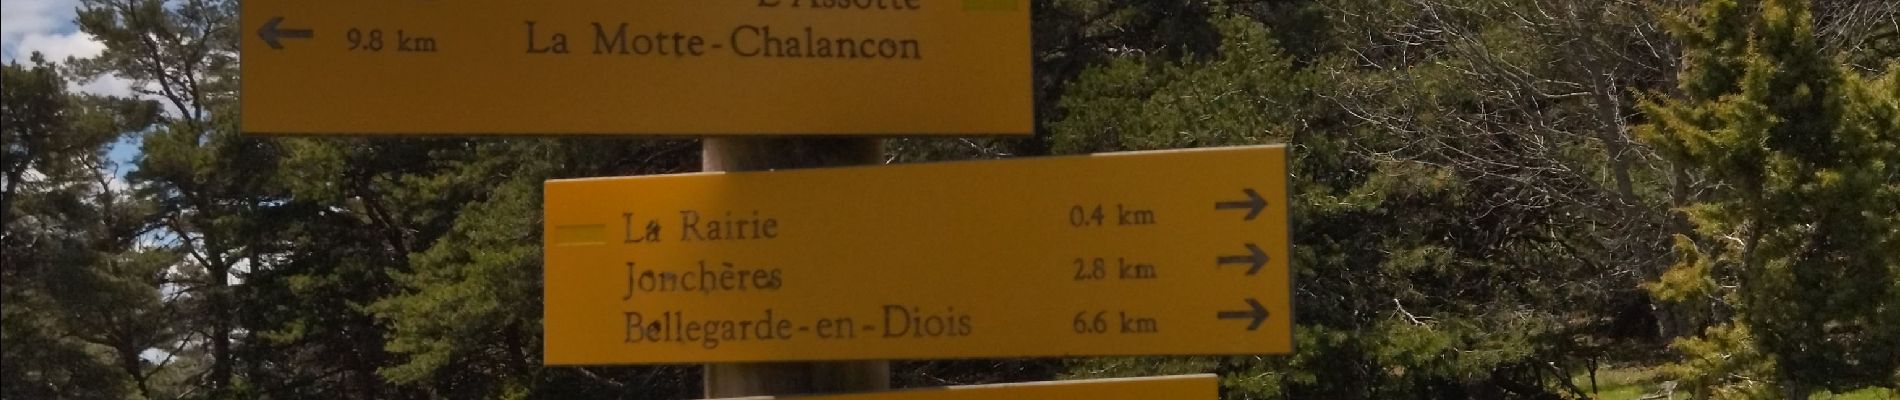 Randonnée Marche Chalancon - 26 eyriau - Photo